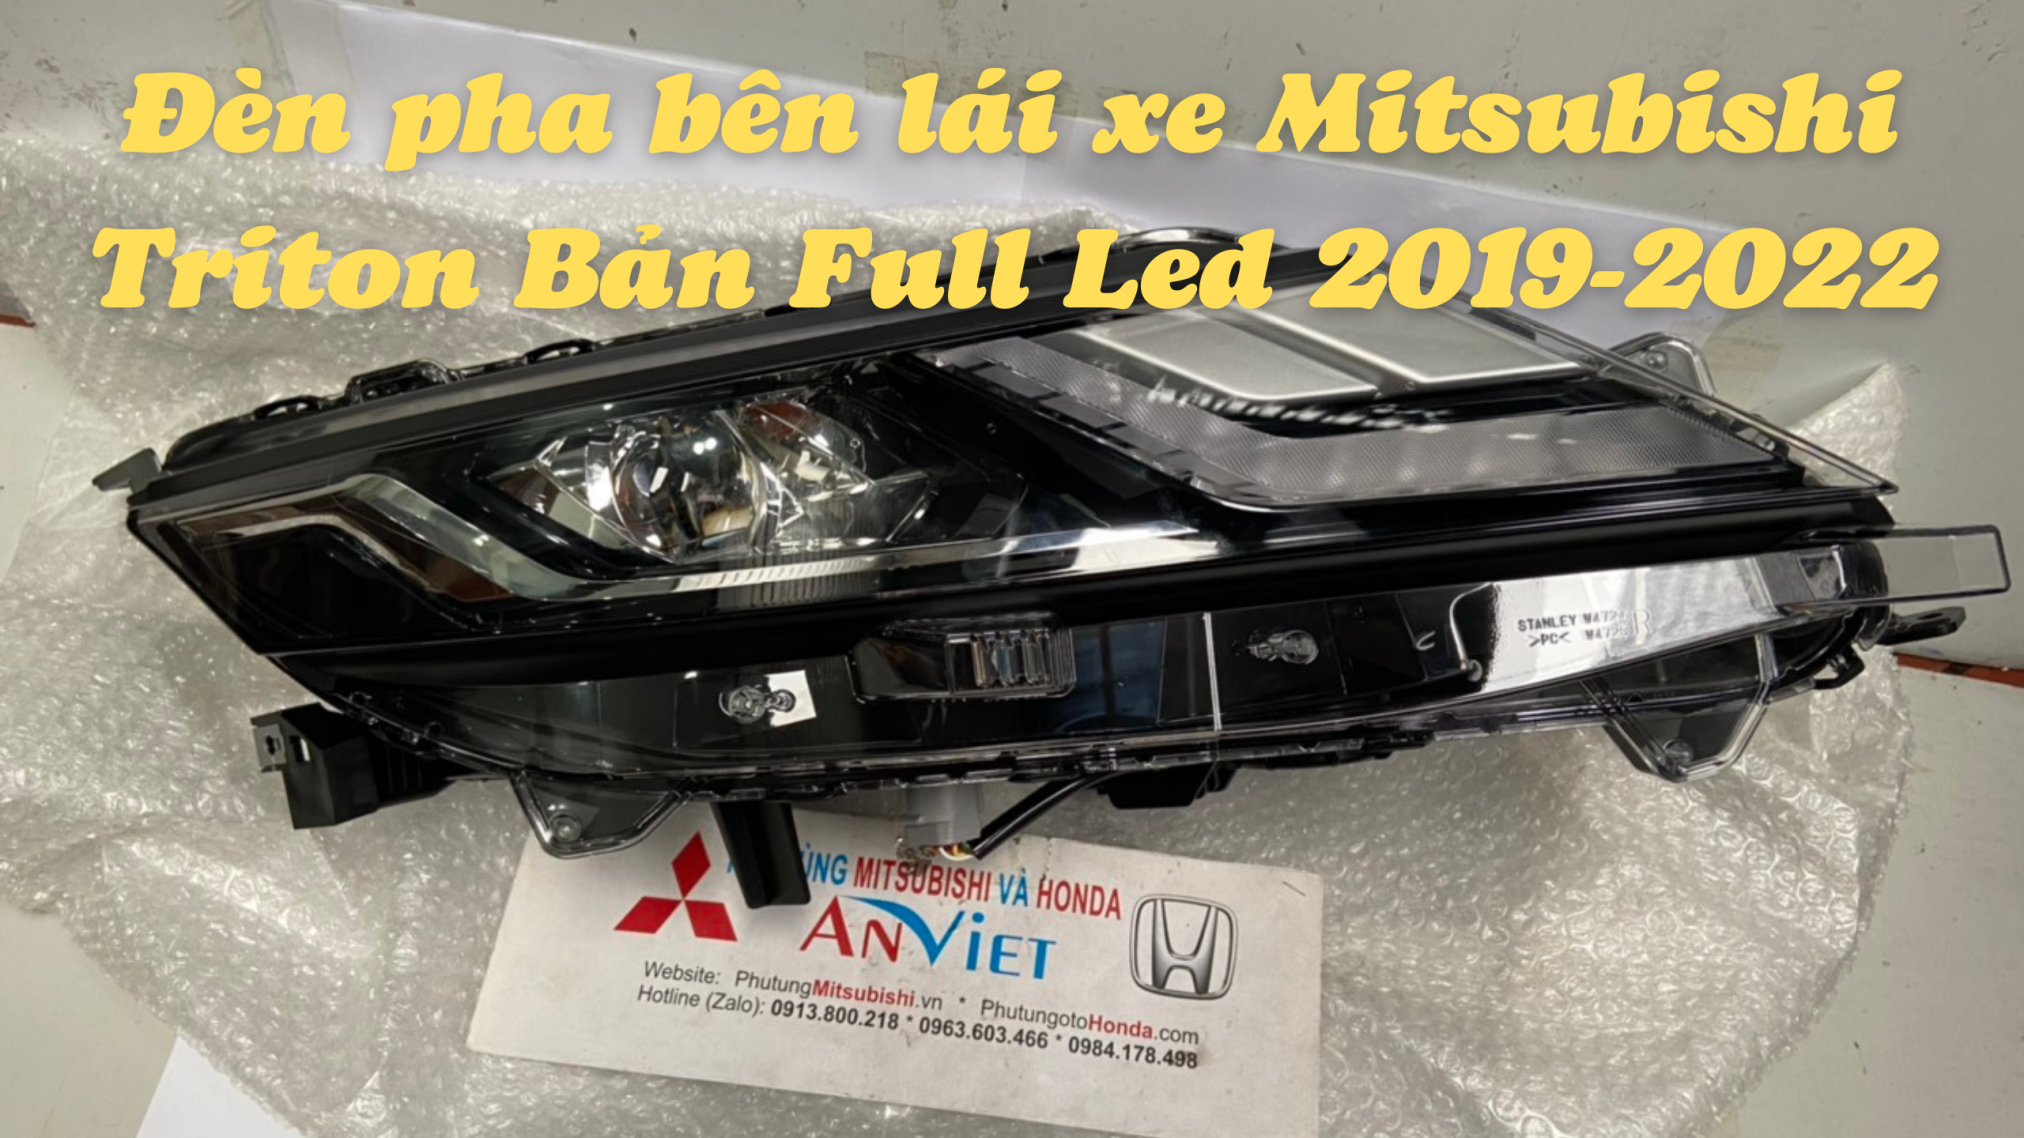 Đèn pha bên lái xe Mitsubishi Triton Bản Full Led 2019 đến 2022 